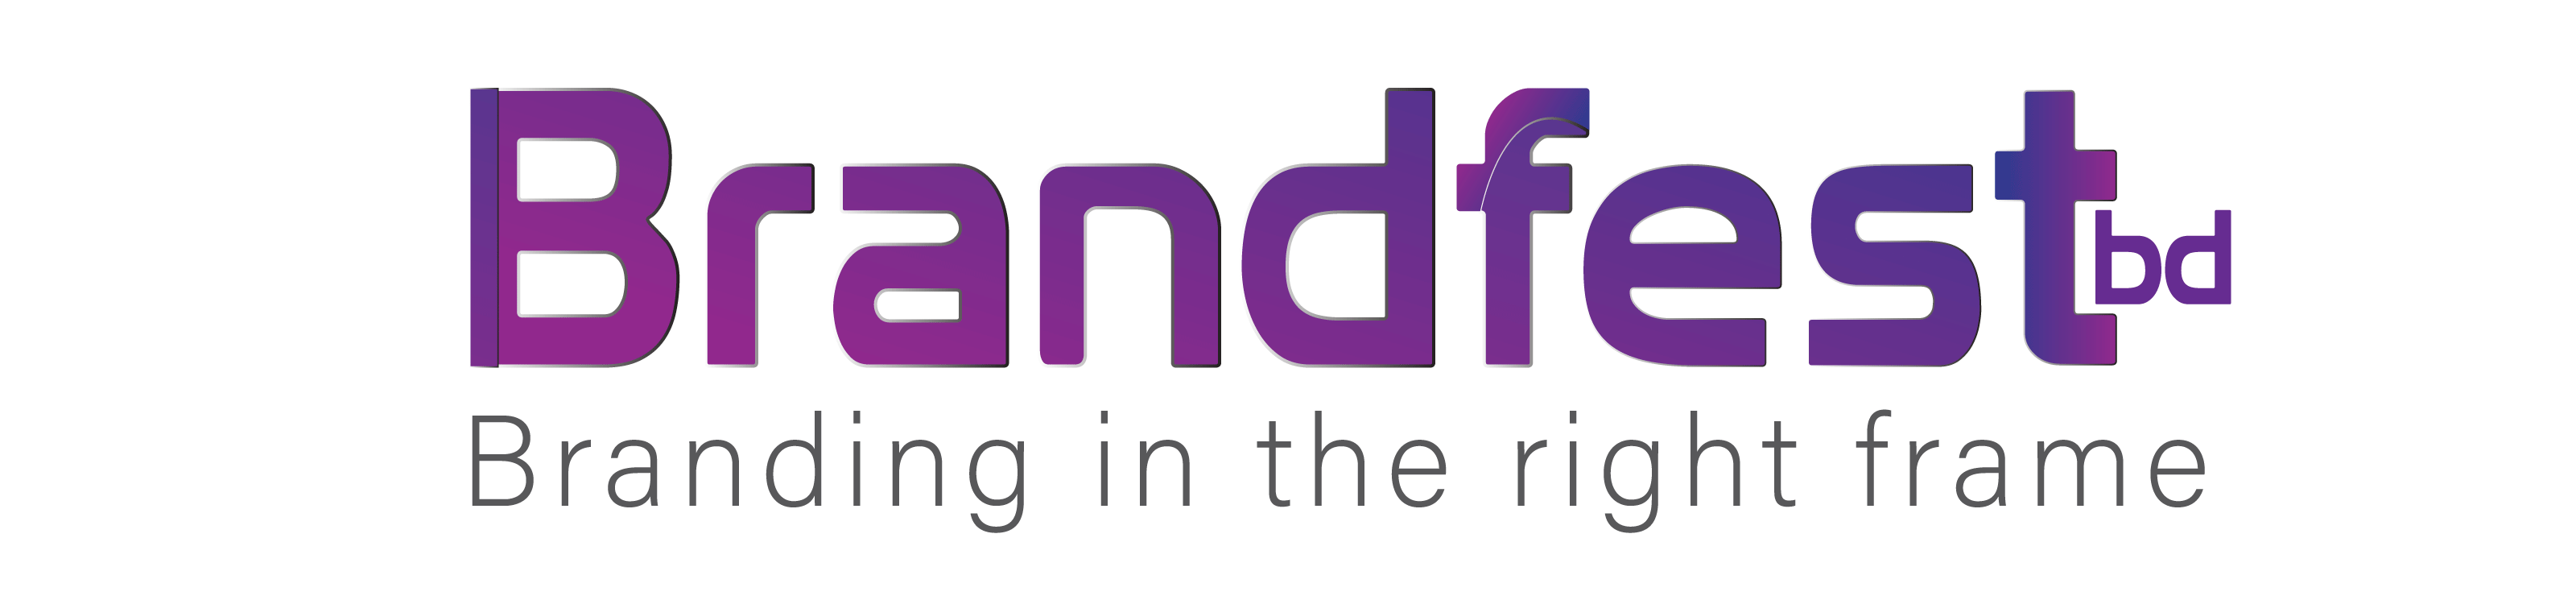 Brandfest logo